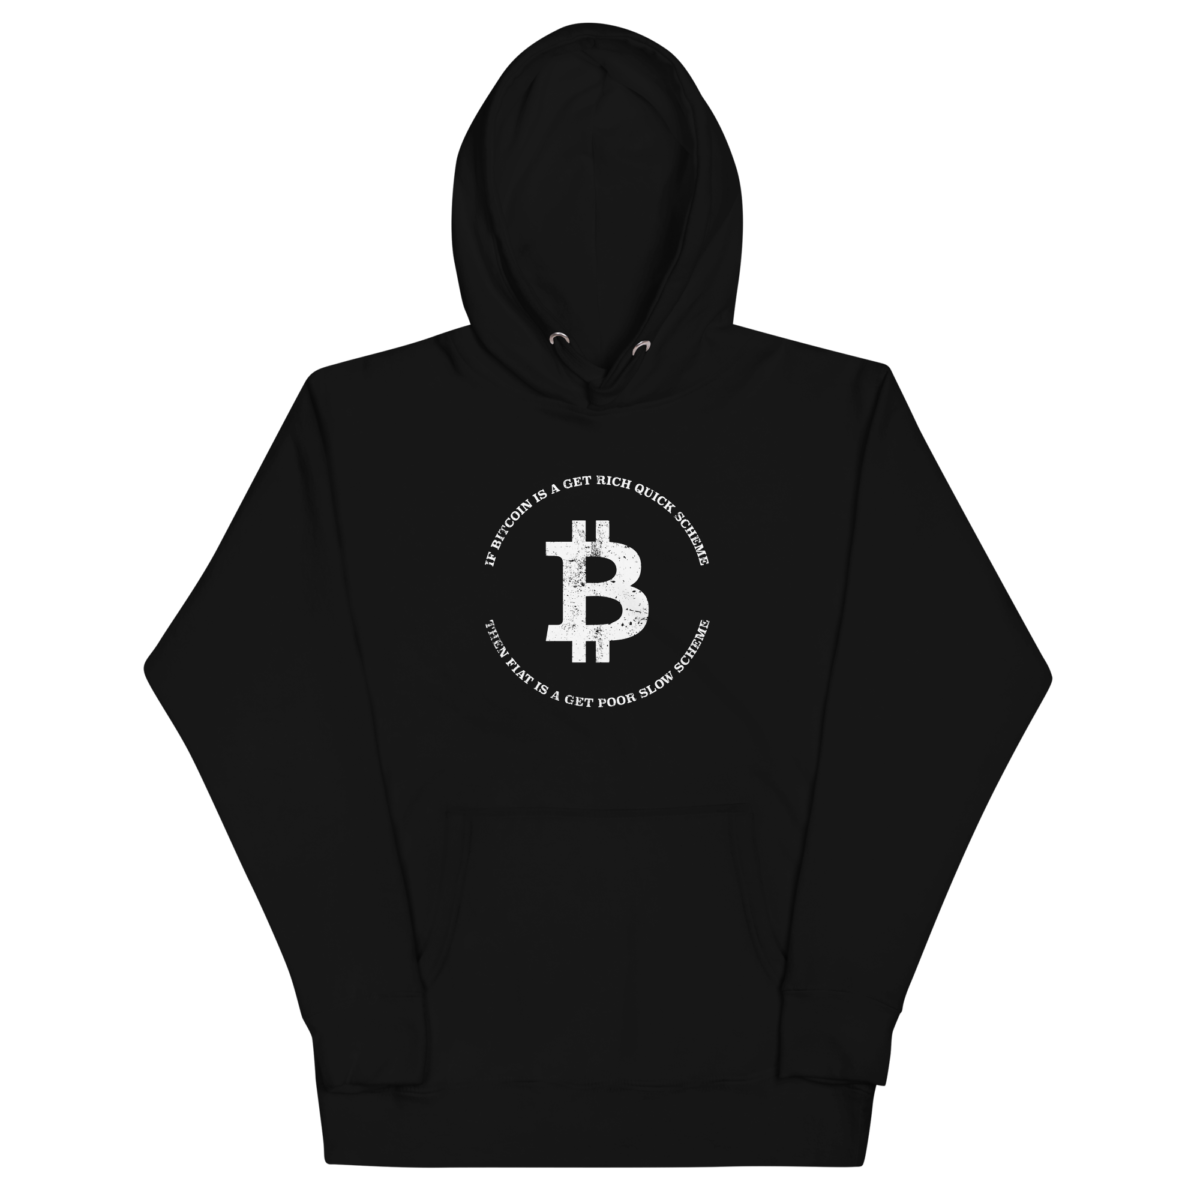 unisex premium hoodie black front 6322339df04b6 - Bitcoin: Get Rich Quick Scheme Hoodie